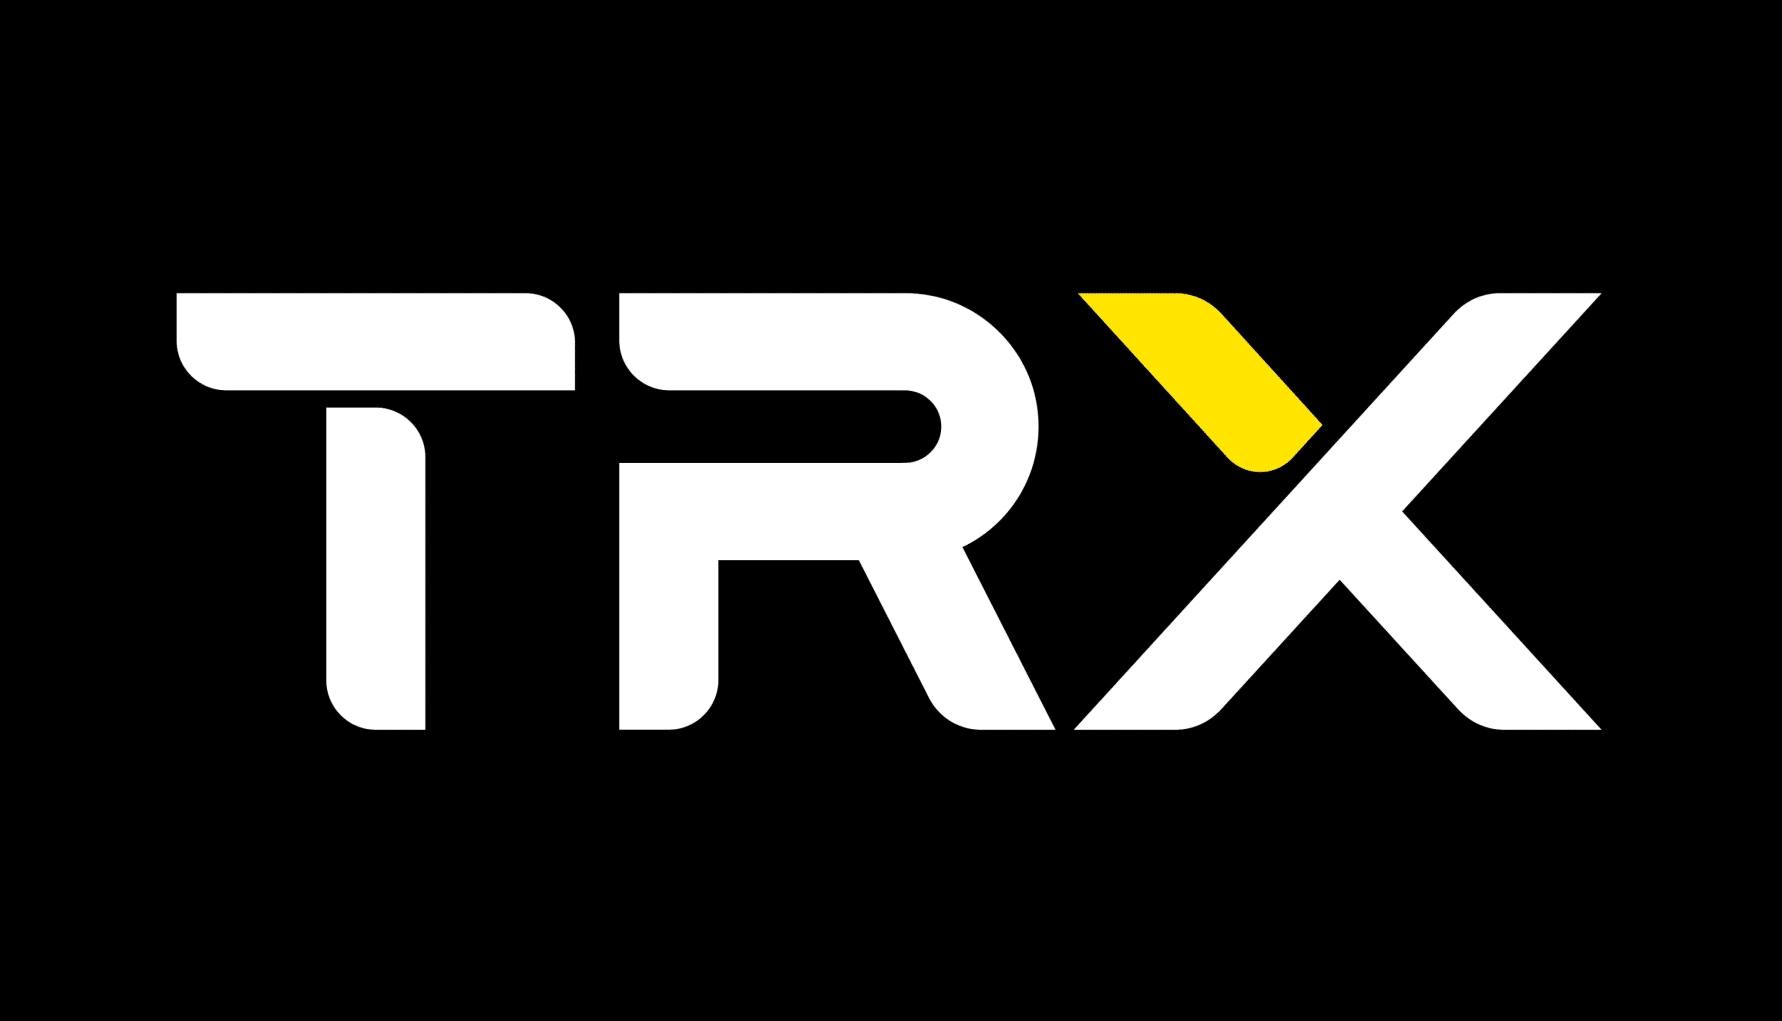 trx logo white yellow black bkgd rgb